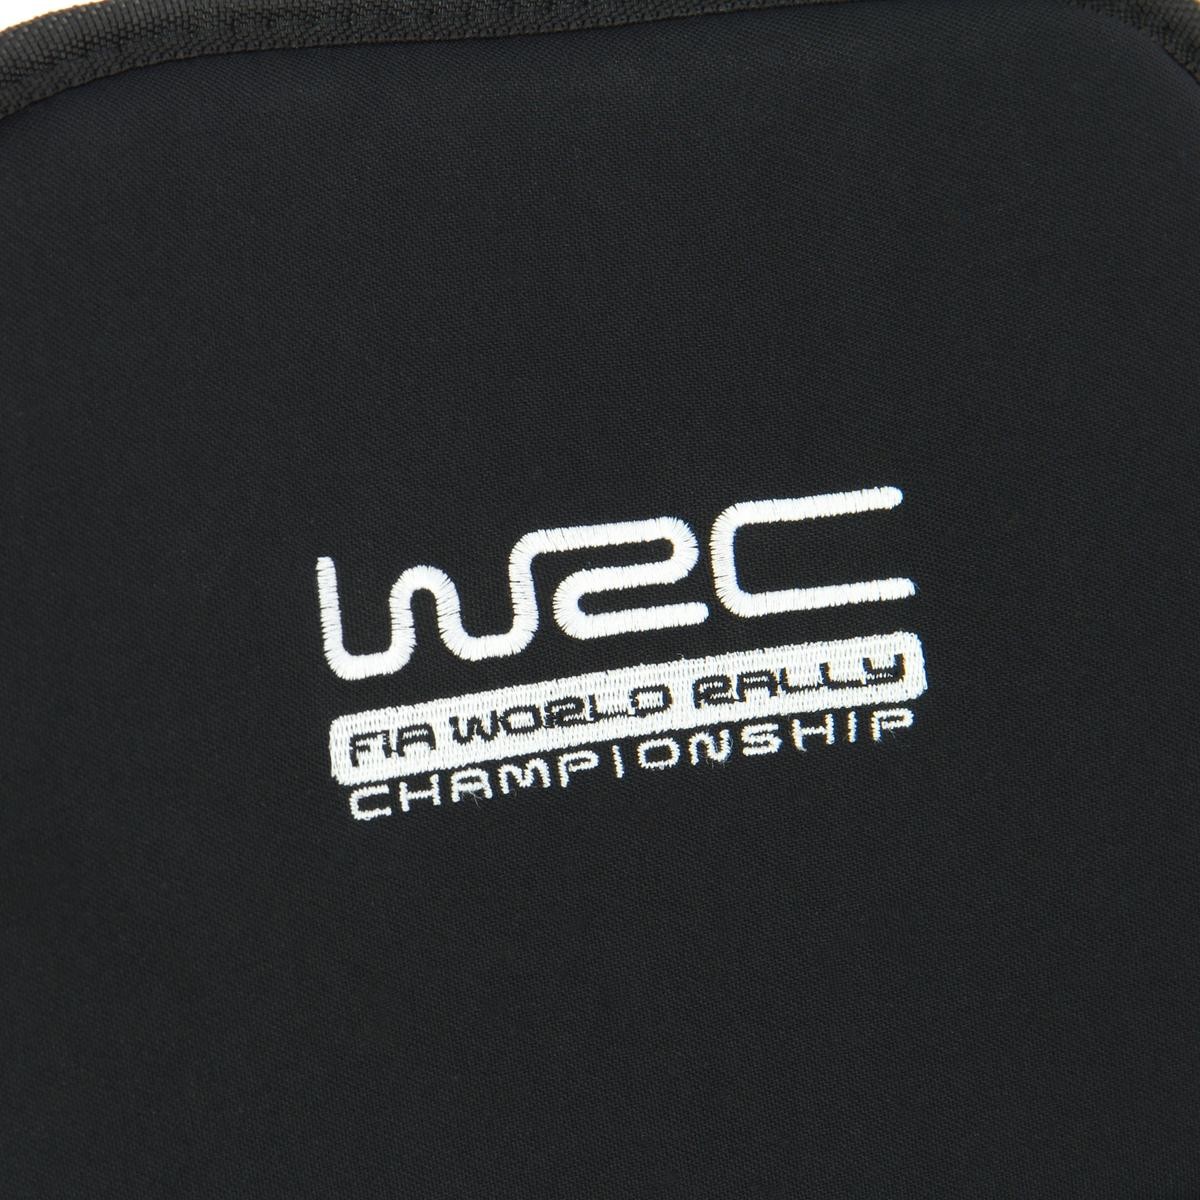 007591 WRC Autositzauflage 007591 ❱❱❱ Preis und Erfahrungen